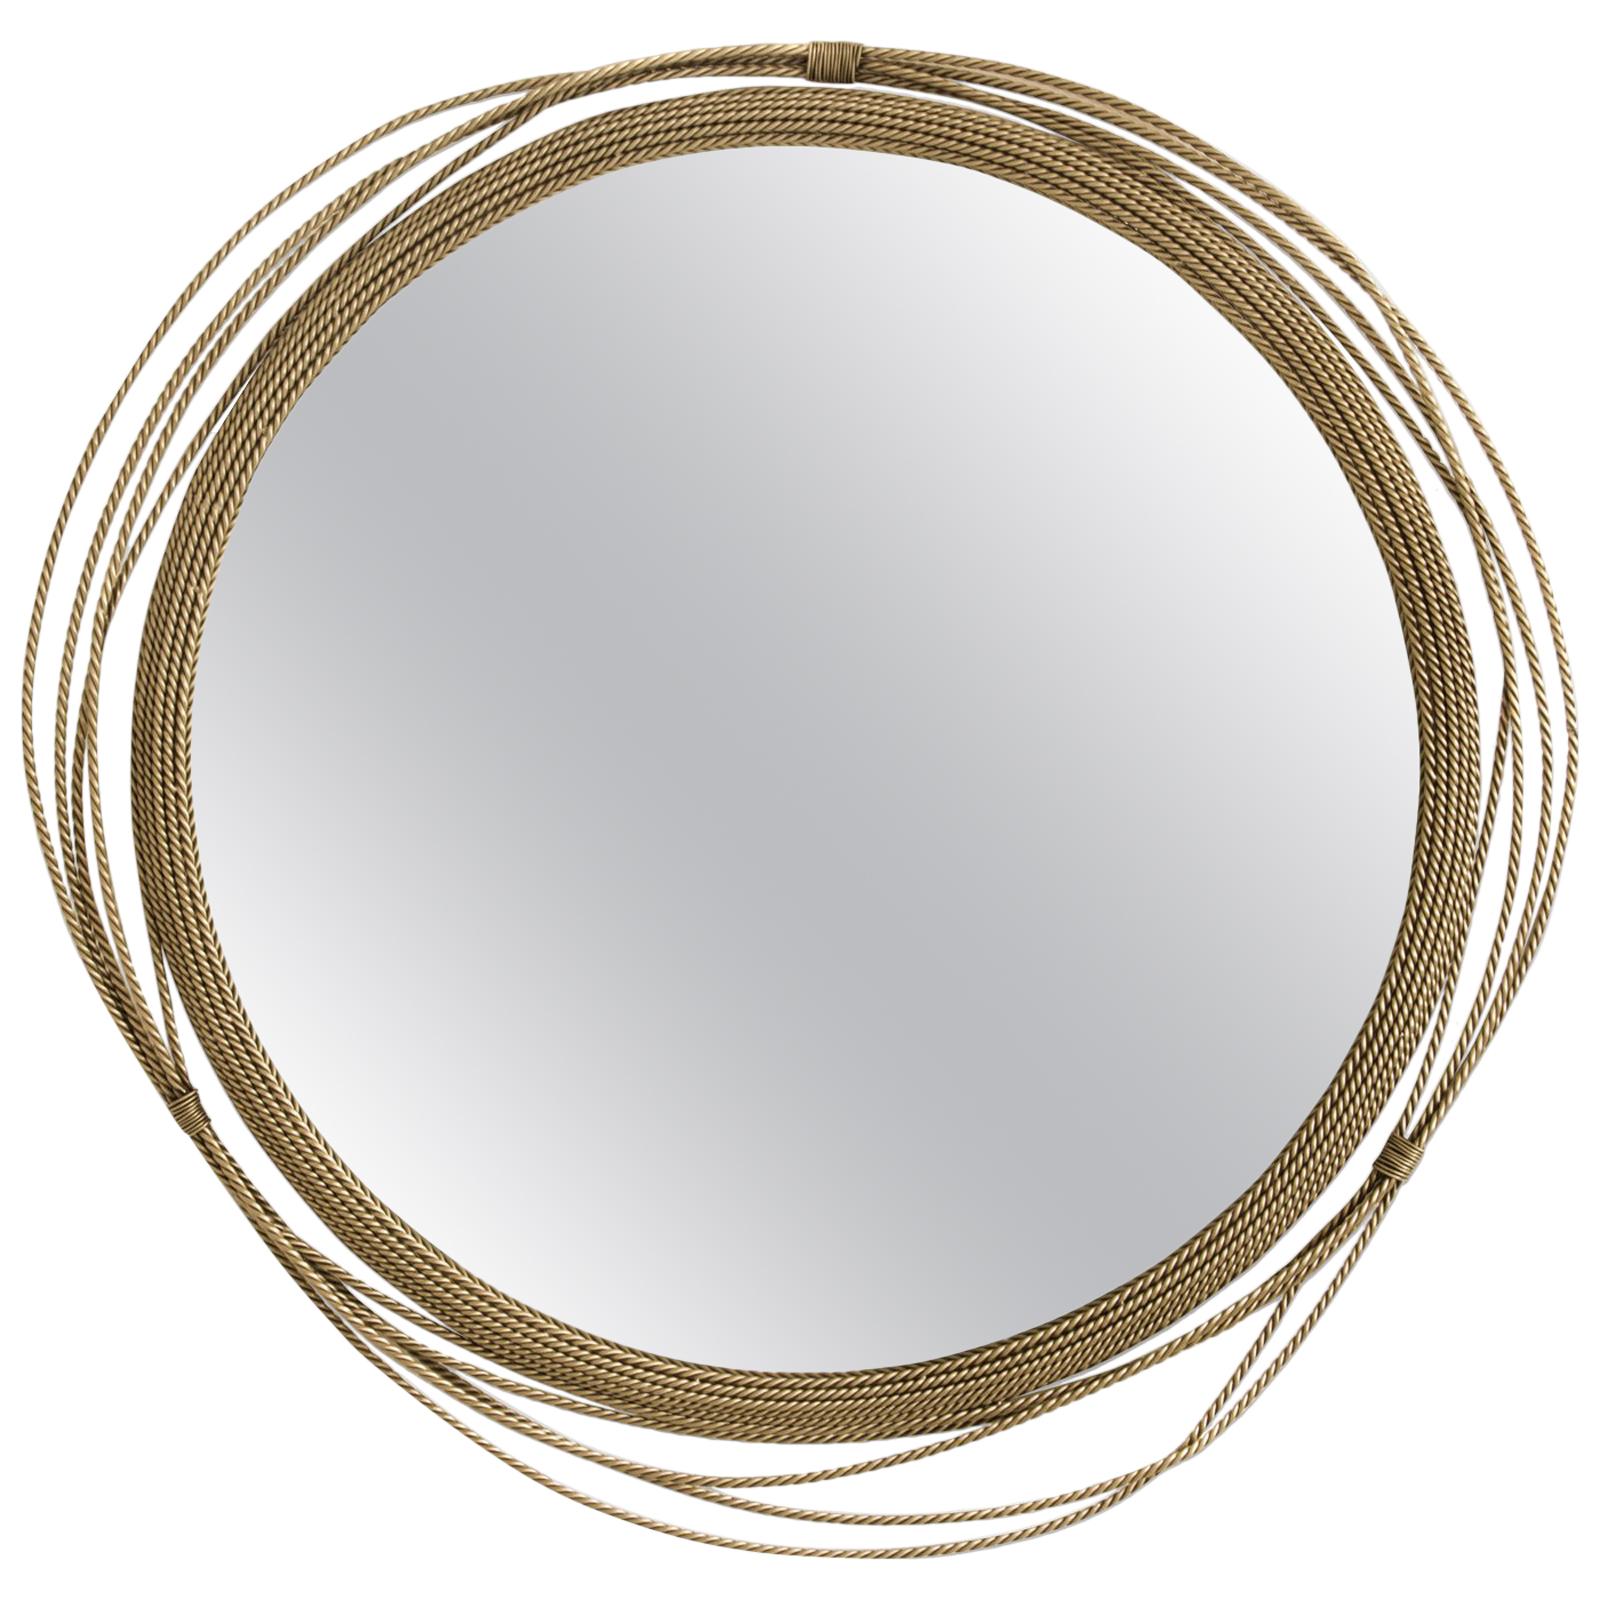 Brass Knot Round Mirror